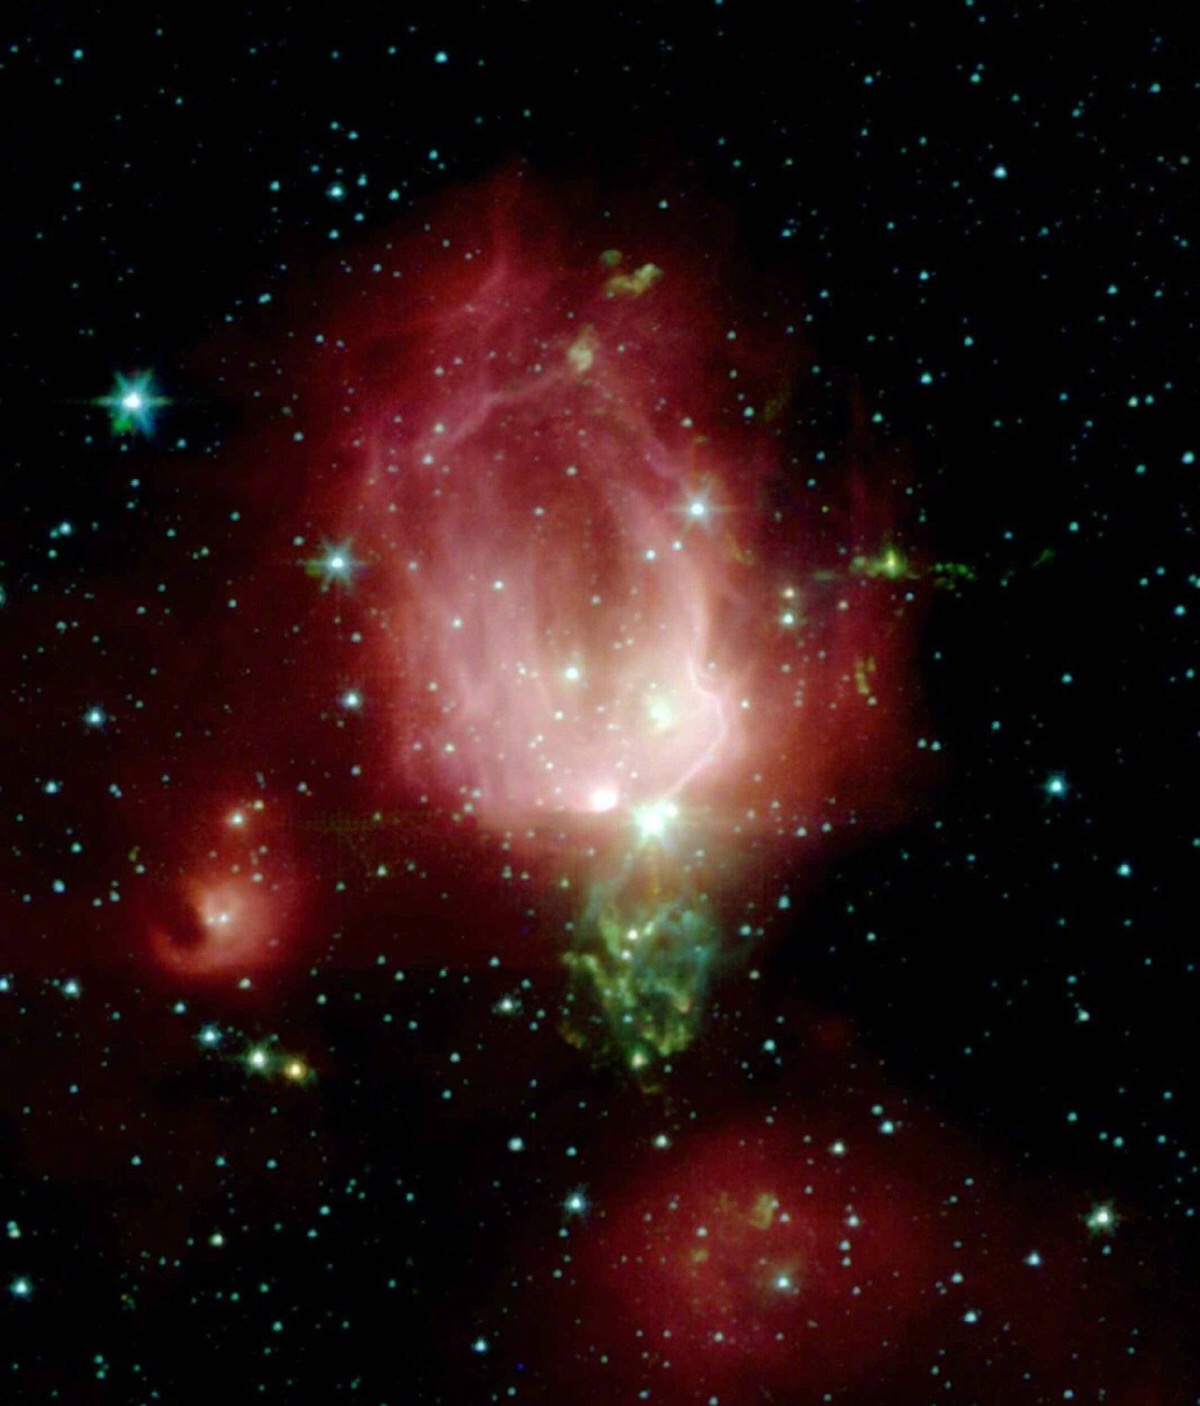 这朵星云玫瑰,名为ngc 7129,位于仙王座,距离我们约为3300光年